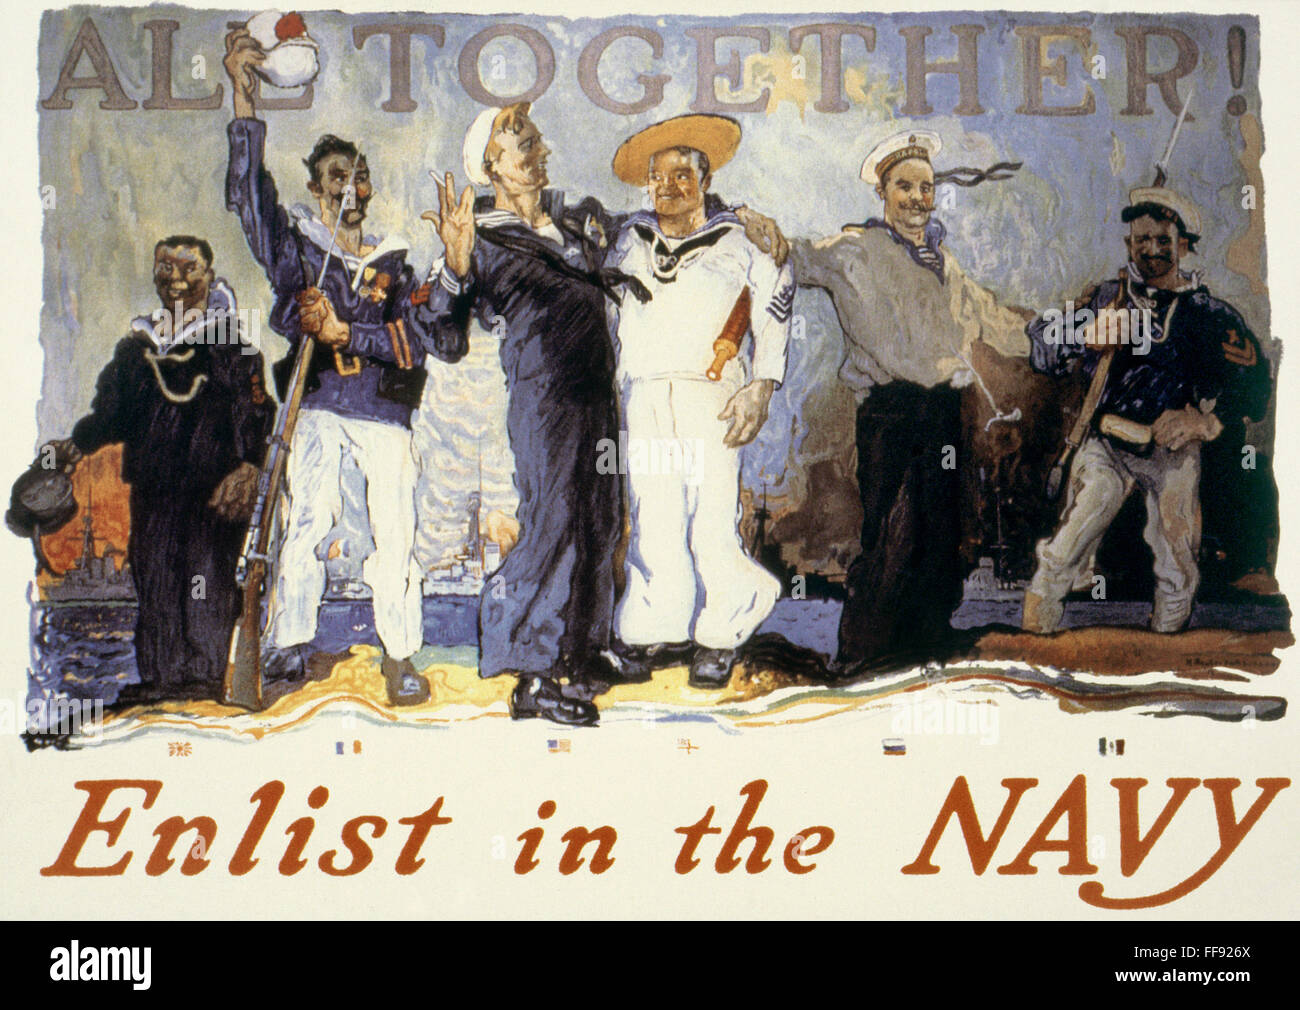 La PREMIÈRE GUERRE MONDIALE : l'affiche américaine. /N'tous ensemble !" La Première Guerre mondiale affiche de recrutement de la Marine américaine, 1917, encourageant la solidarité des Alliés. Banque D'Images